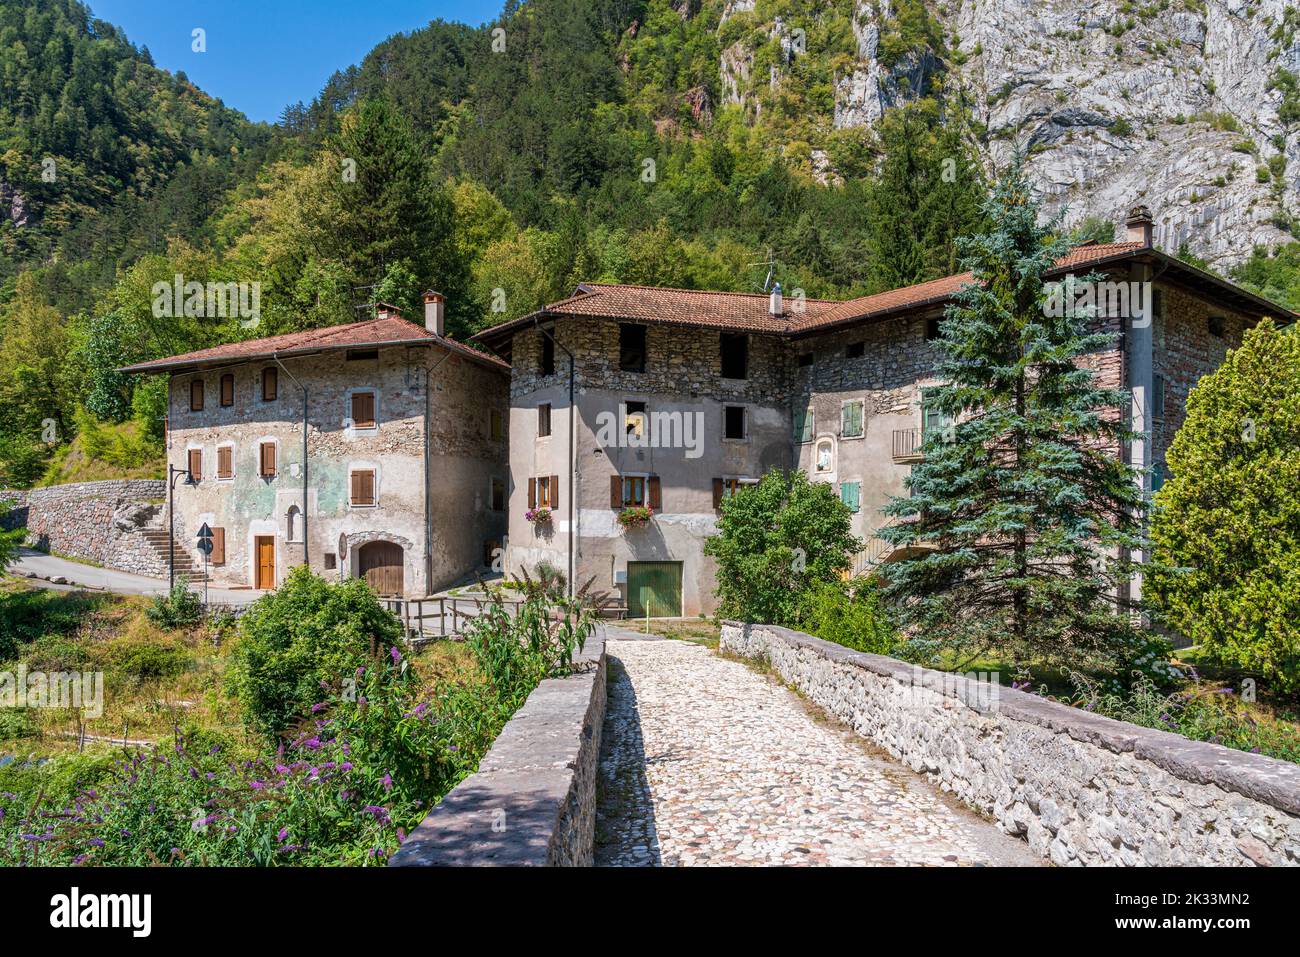 Le petit village de Moline, près de San Lorenzo à Banale. Province de trente, Trentin-Haut-Adige, Italie. Banque D'Images